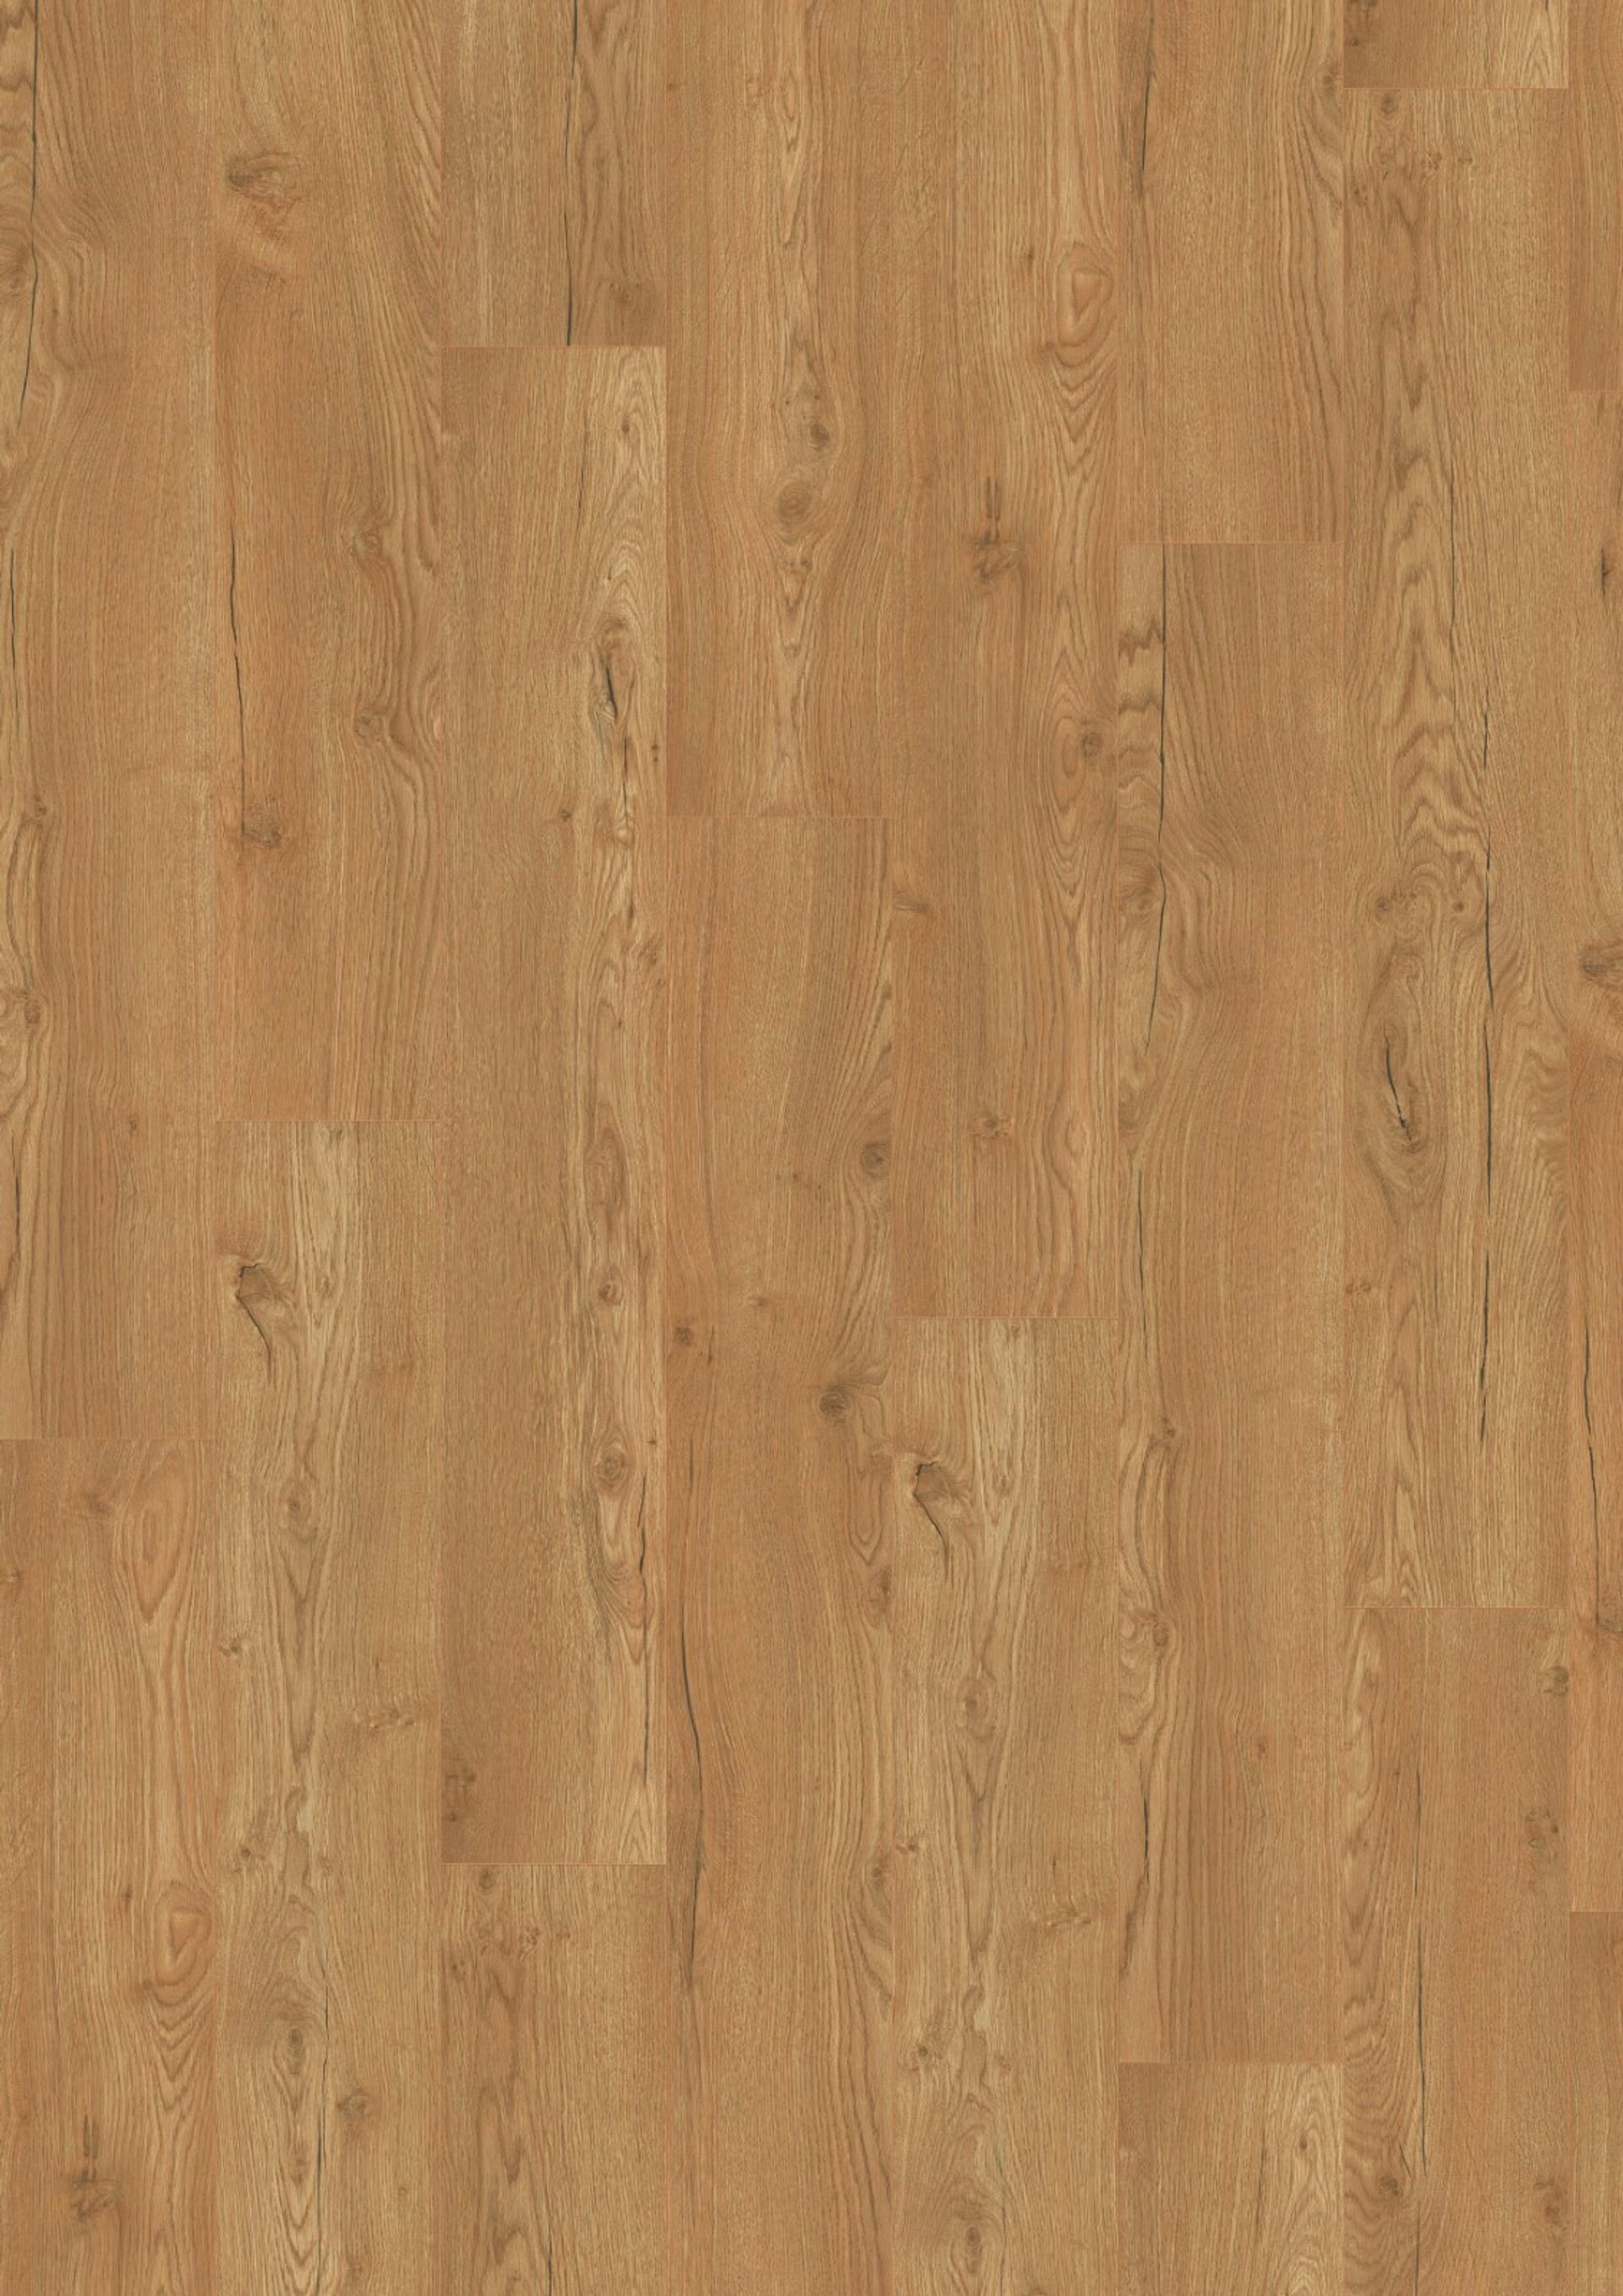 Laminat Planke Holzoptik 1292 x 193 mm mit Klickverbindung Joka Manhattan City Normal Plank 5533-Oak honey